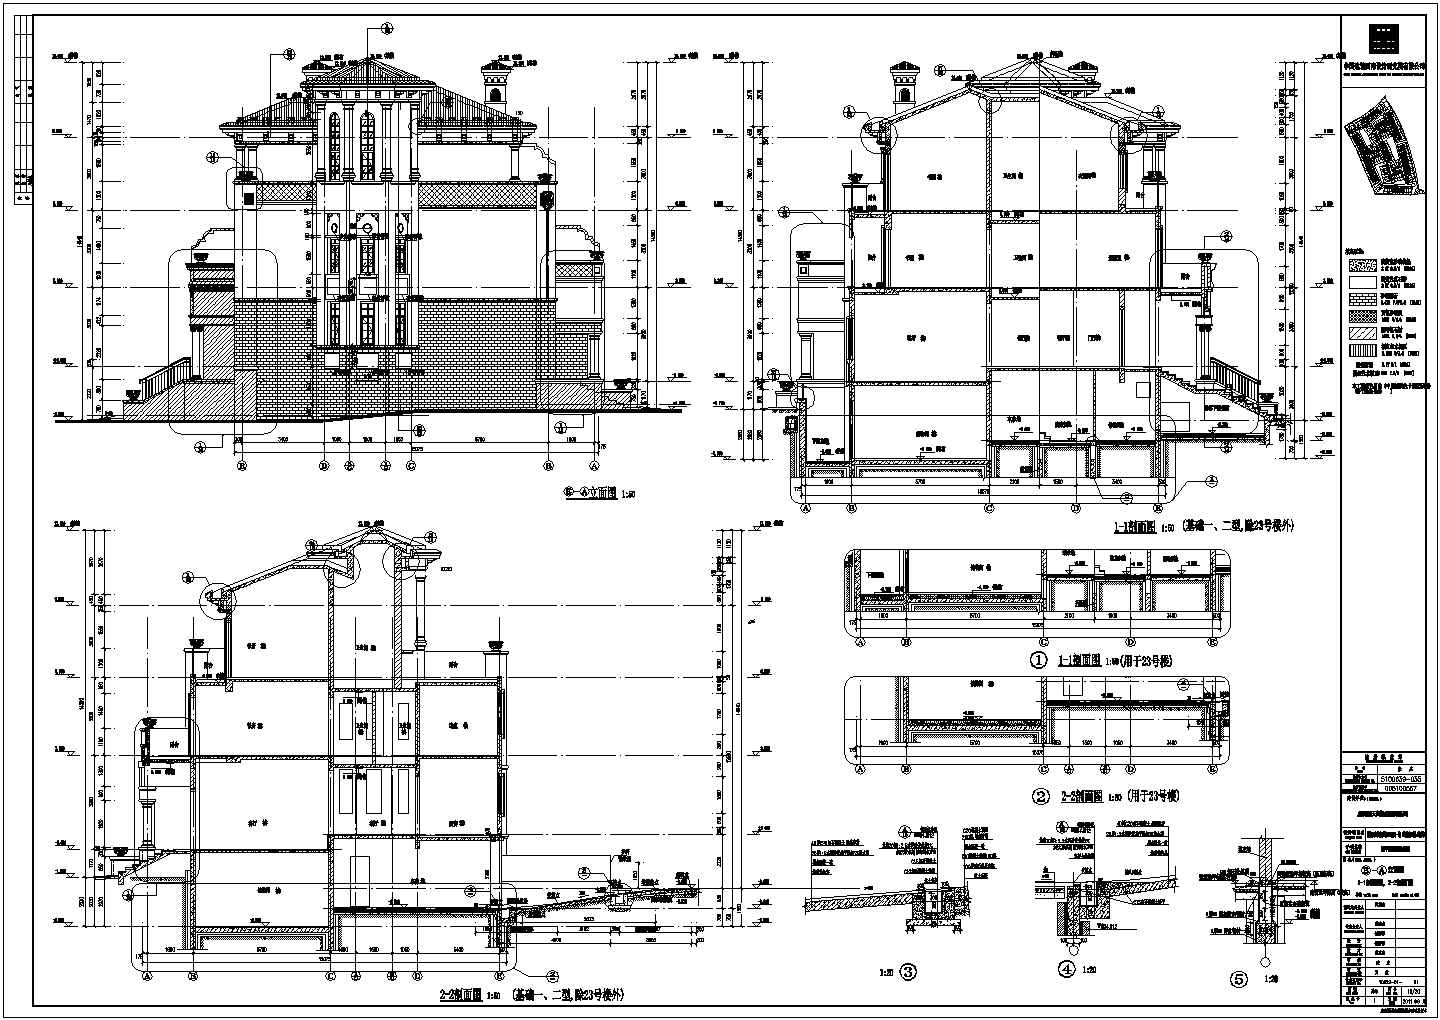 【四川省】多层联排别墅设计施工图